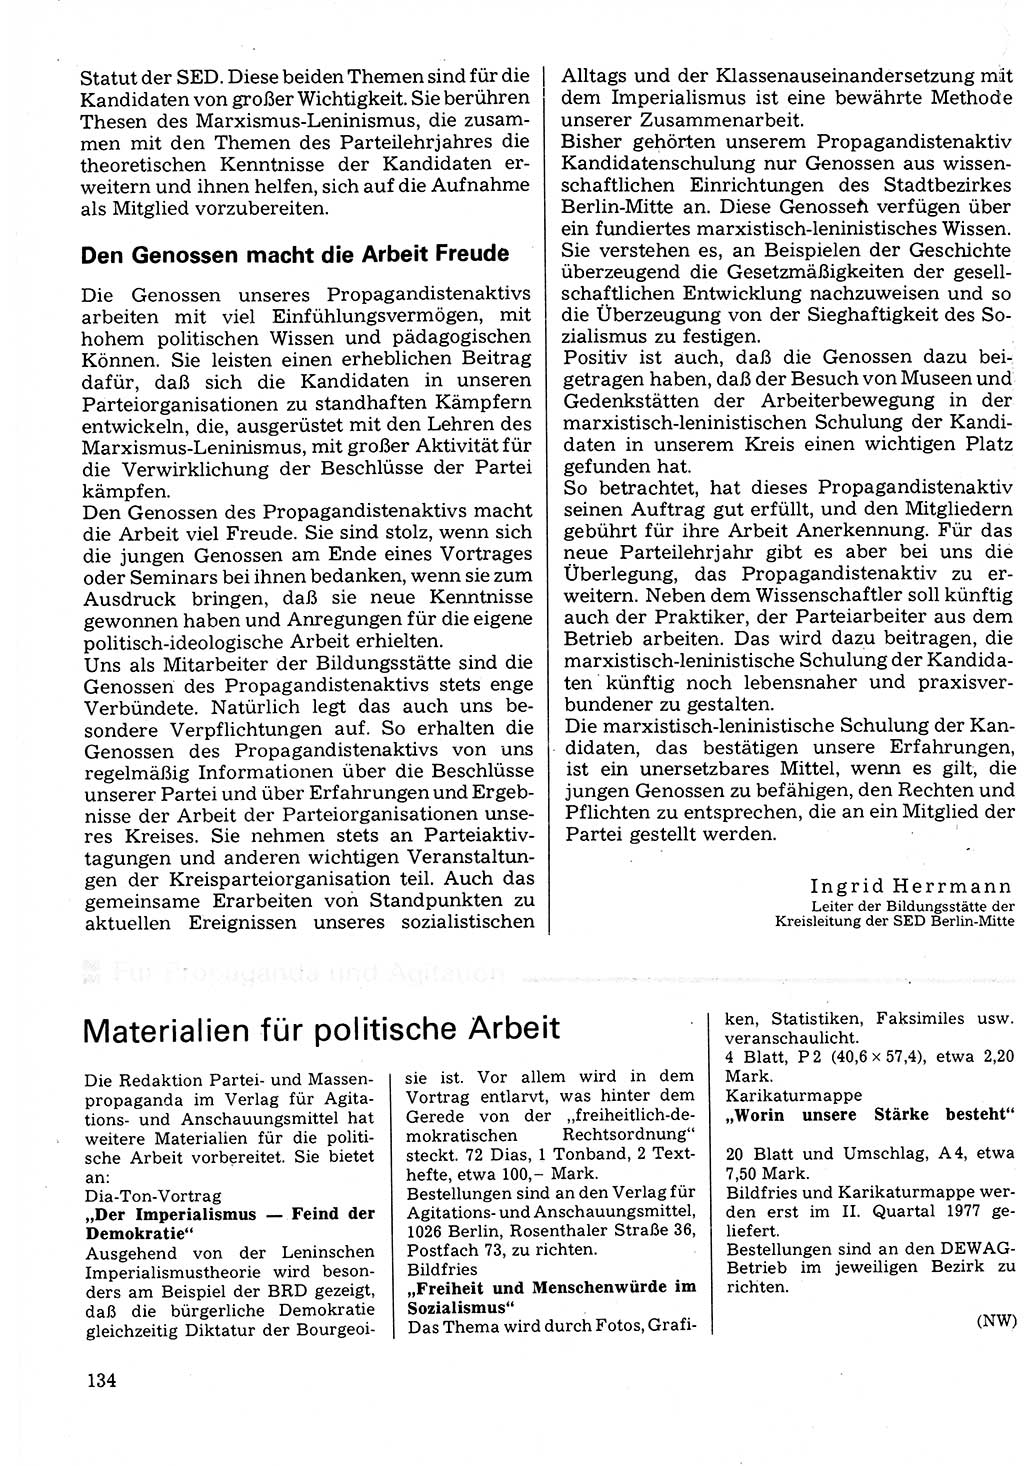 Neuer Weg (NW), Organ des Zentralkomitees (ZK) der SED (Sozialistische Einheitspartei Deutschlands) für Fragen des Parteilebens, 32. Jahrgang [Deutsche Demokratische Republik (DDR)] 1977, Seite 134 (NW ZK SED DDR 1977, S. 134)